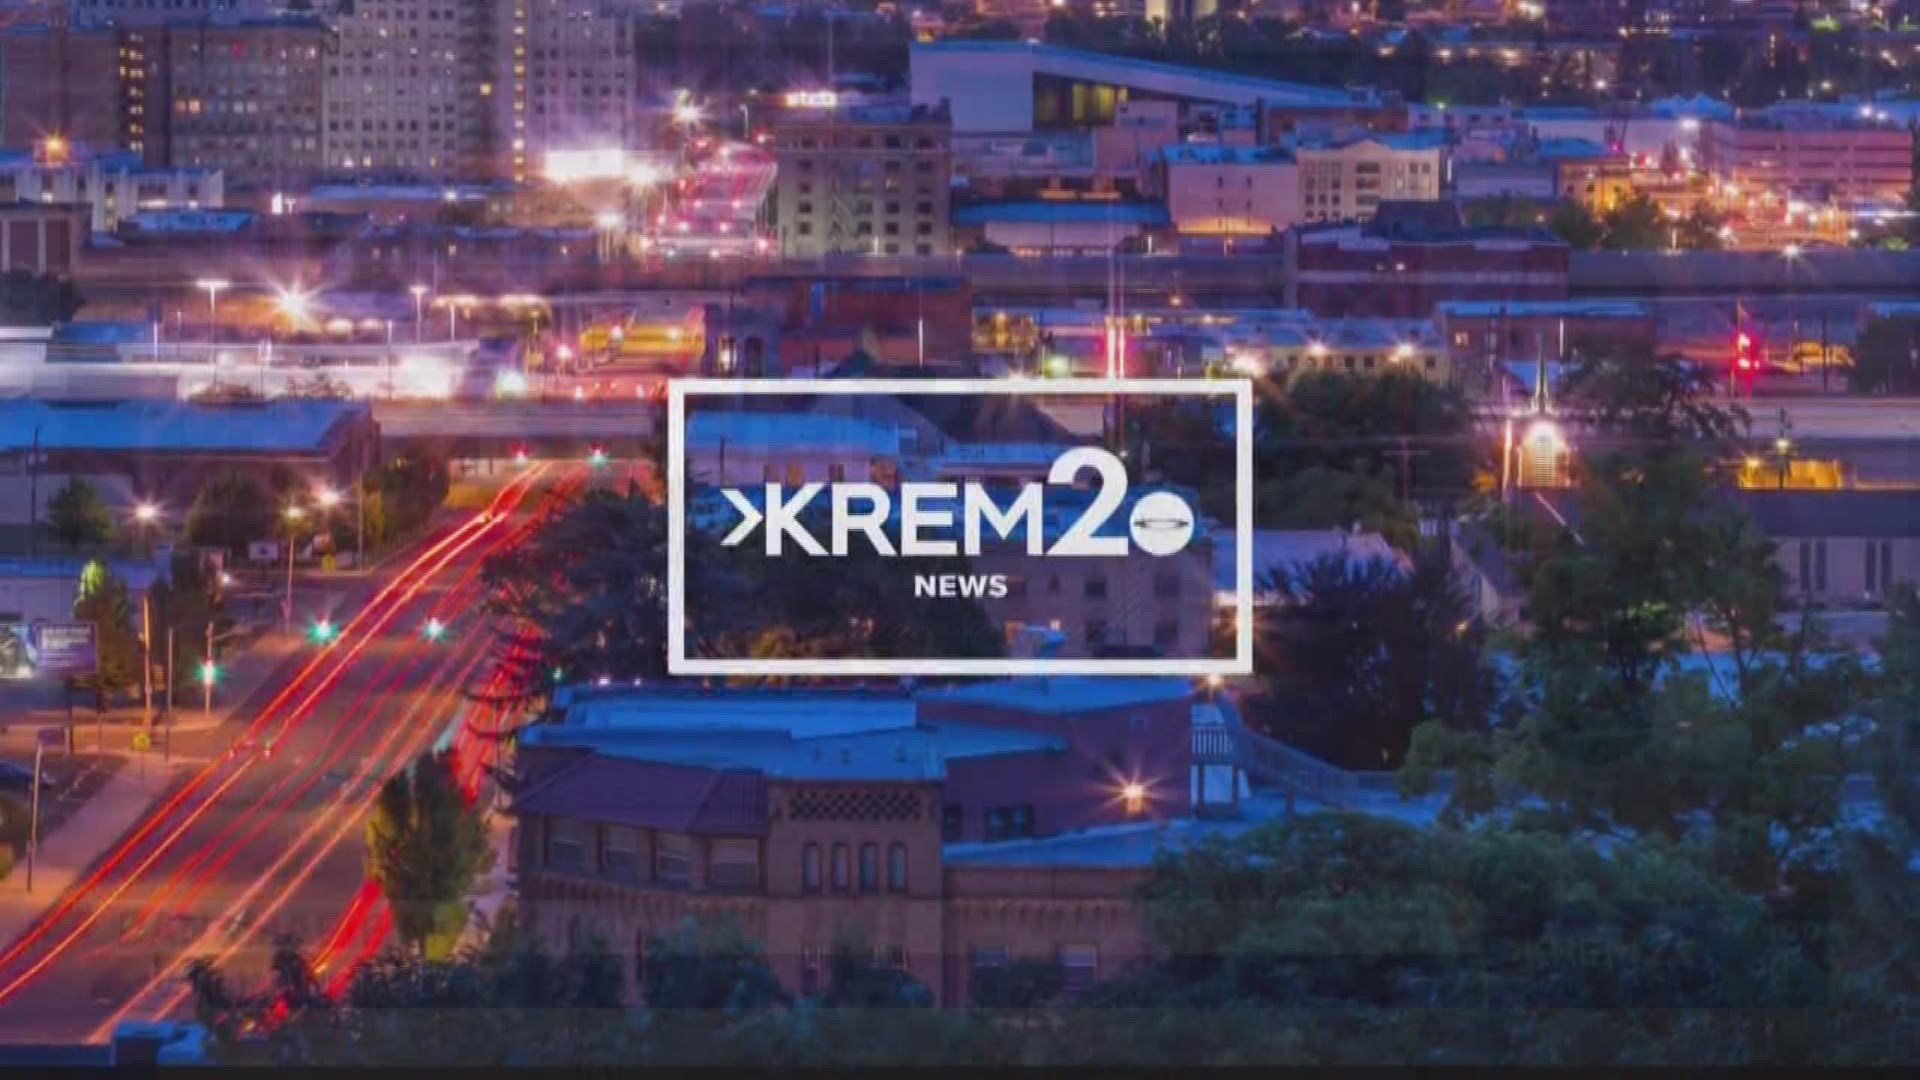 KREM 2 News headlines at 10 p.m. on August 17, 2019.